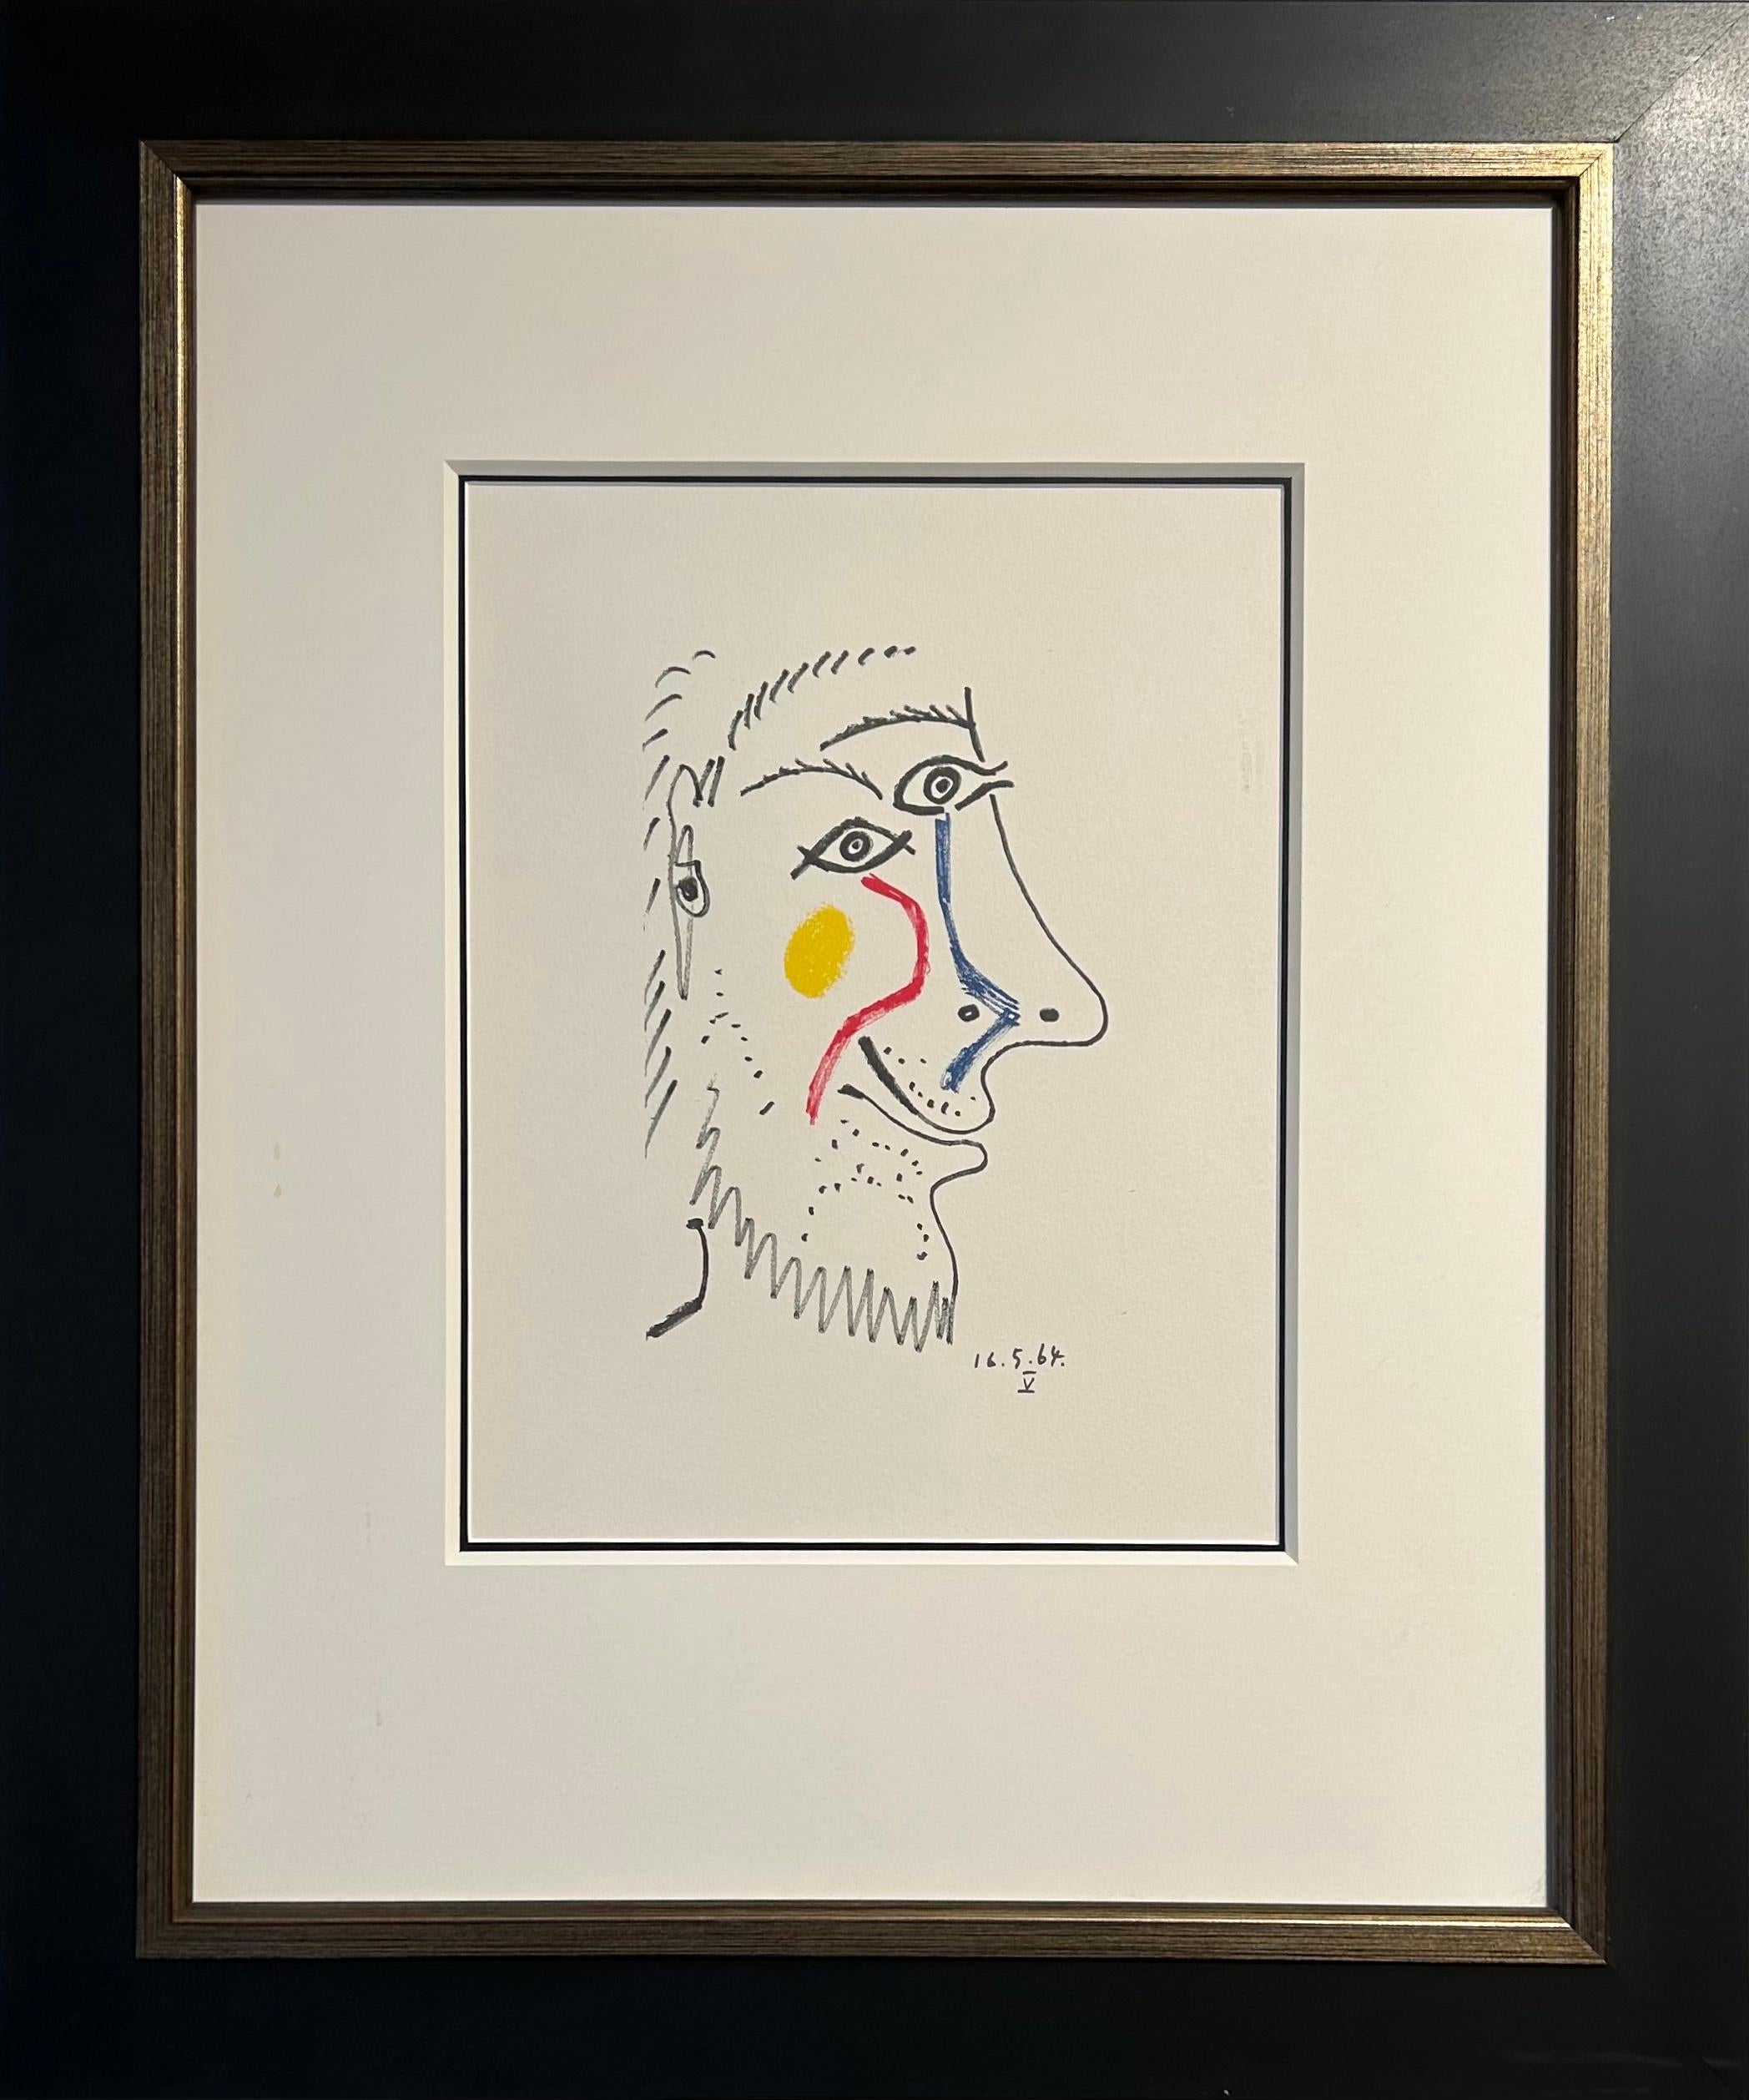 Pablo Picasso Portrait Print - Colour Lithograph on Arches Paper '16.5.64.V' from 'Le Goût de Bonheur' 